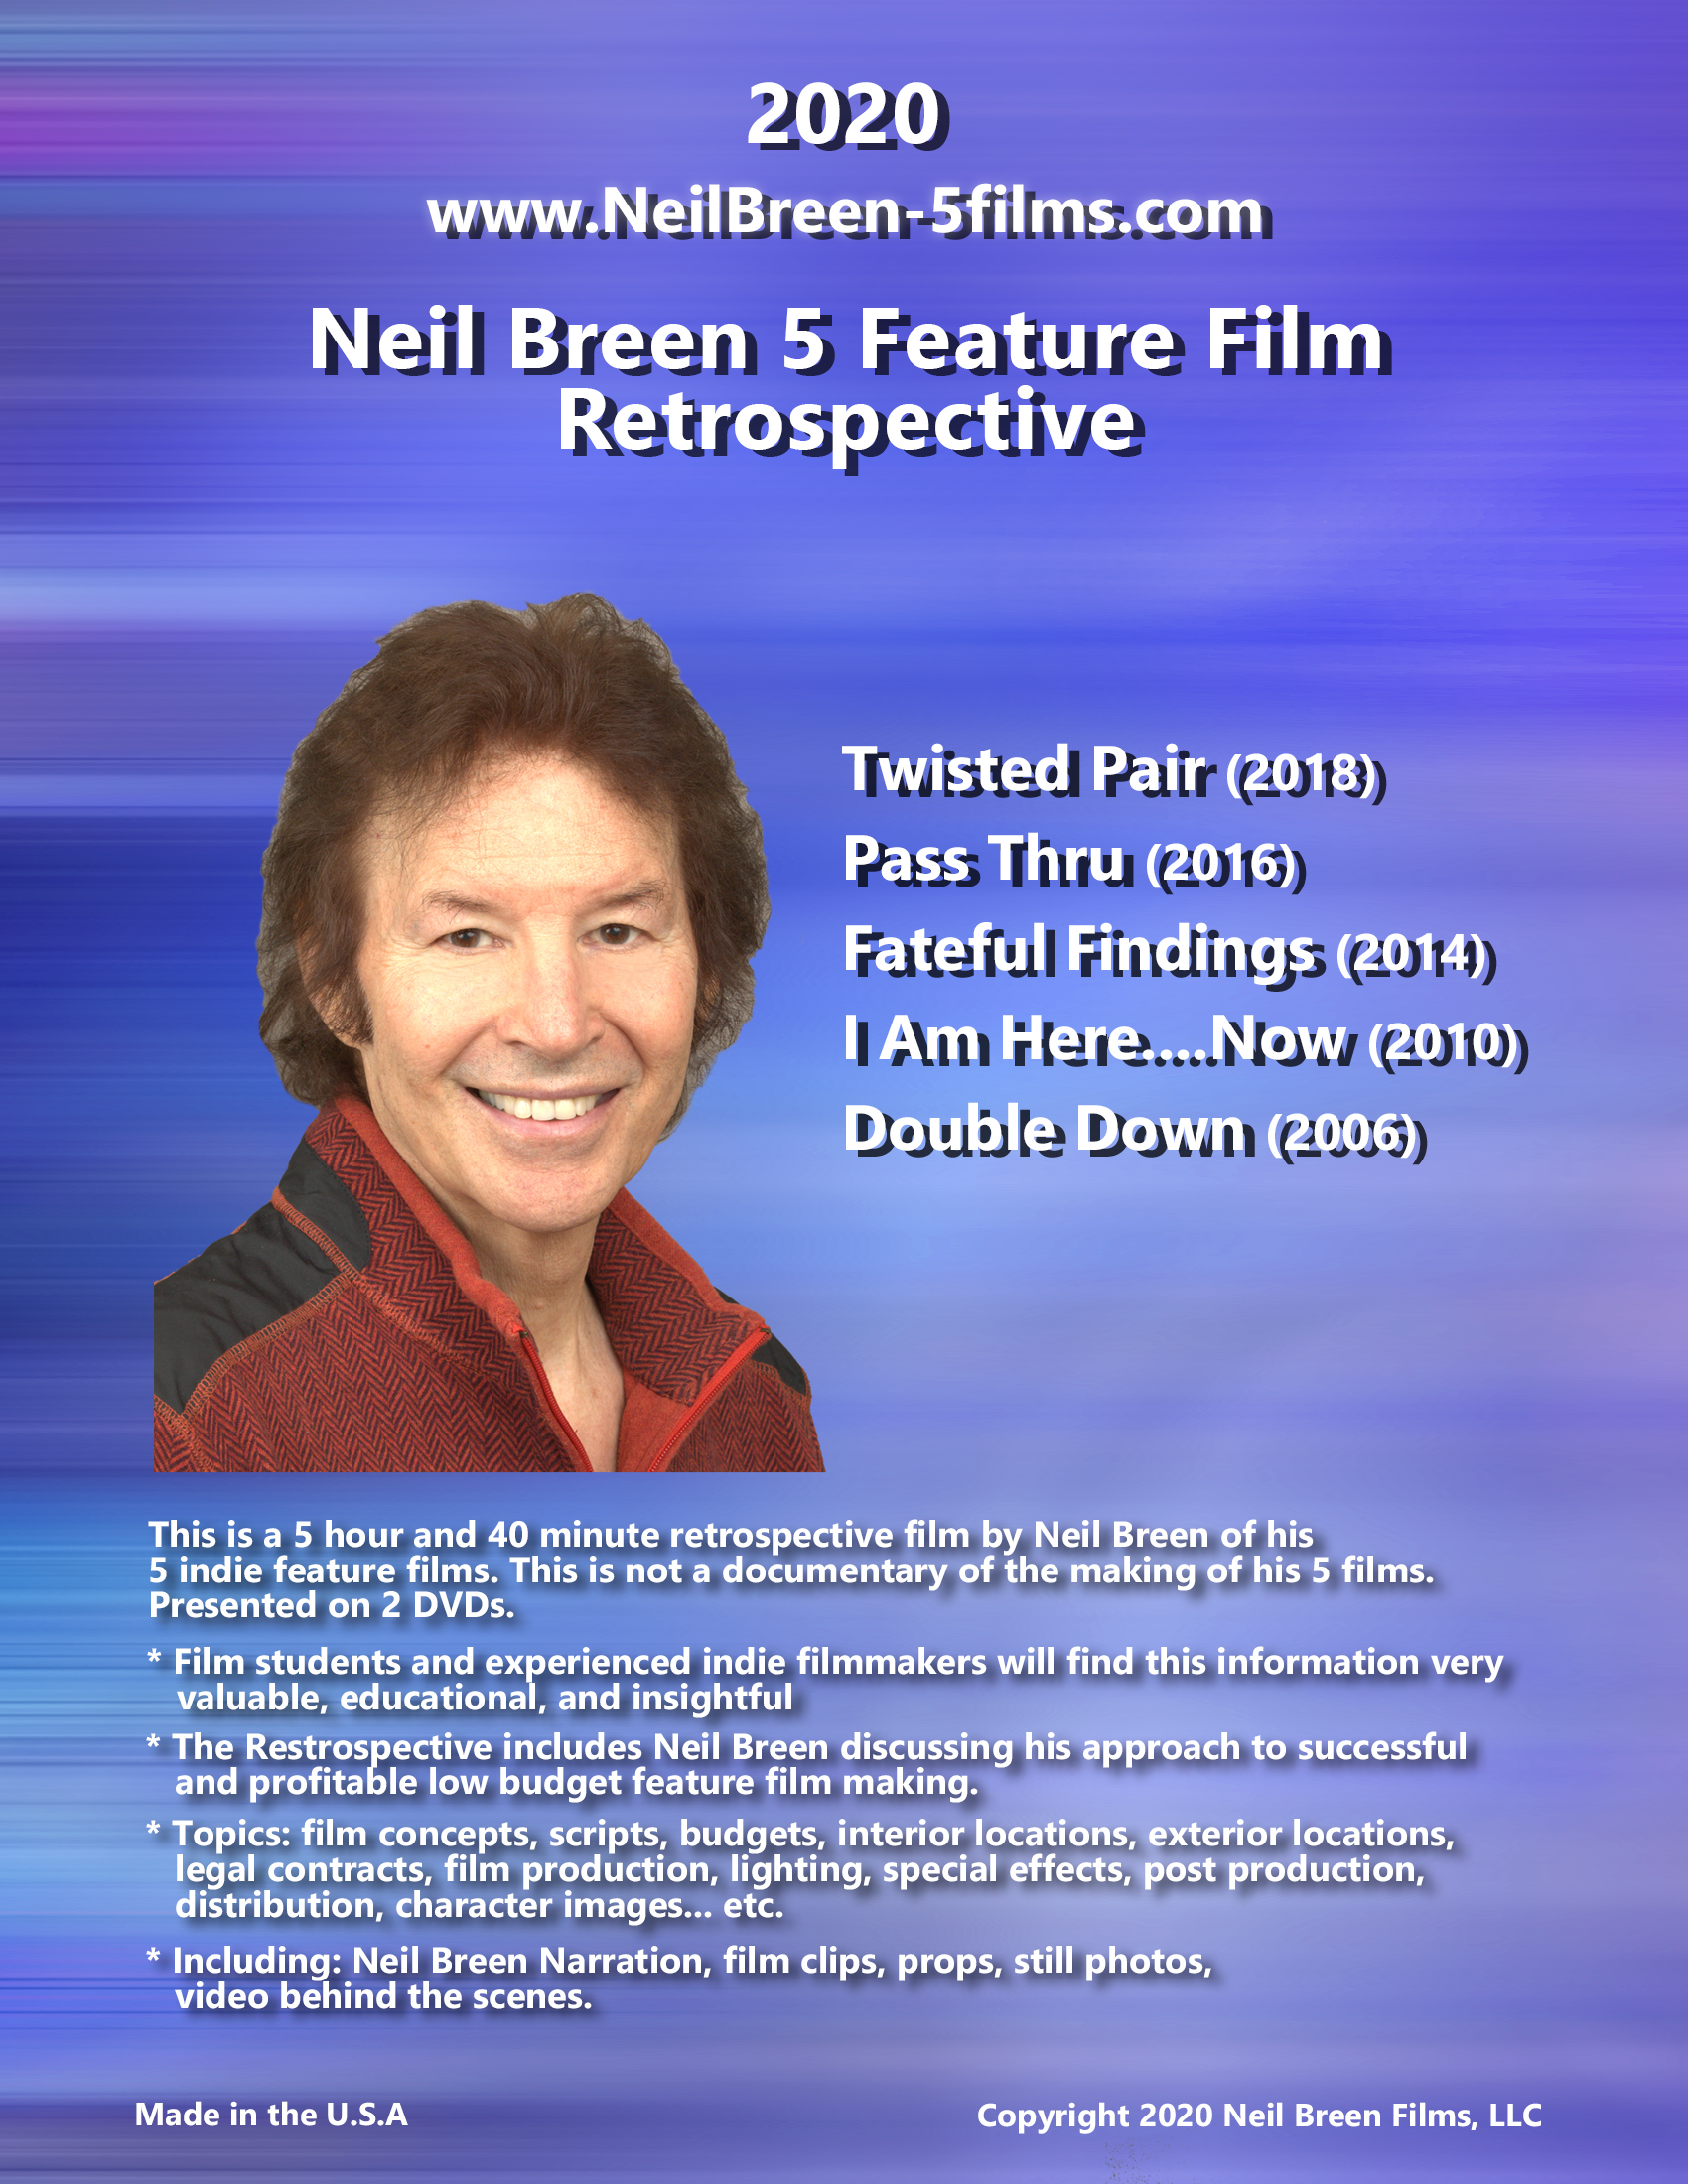 Neil Breen's 5 Film Retrospective (2020) starring Neil Breen on DVD on DVD